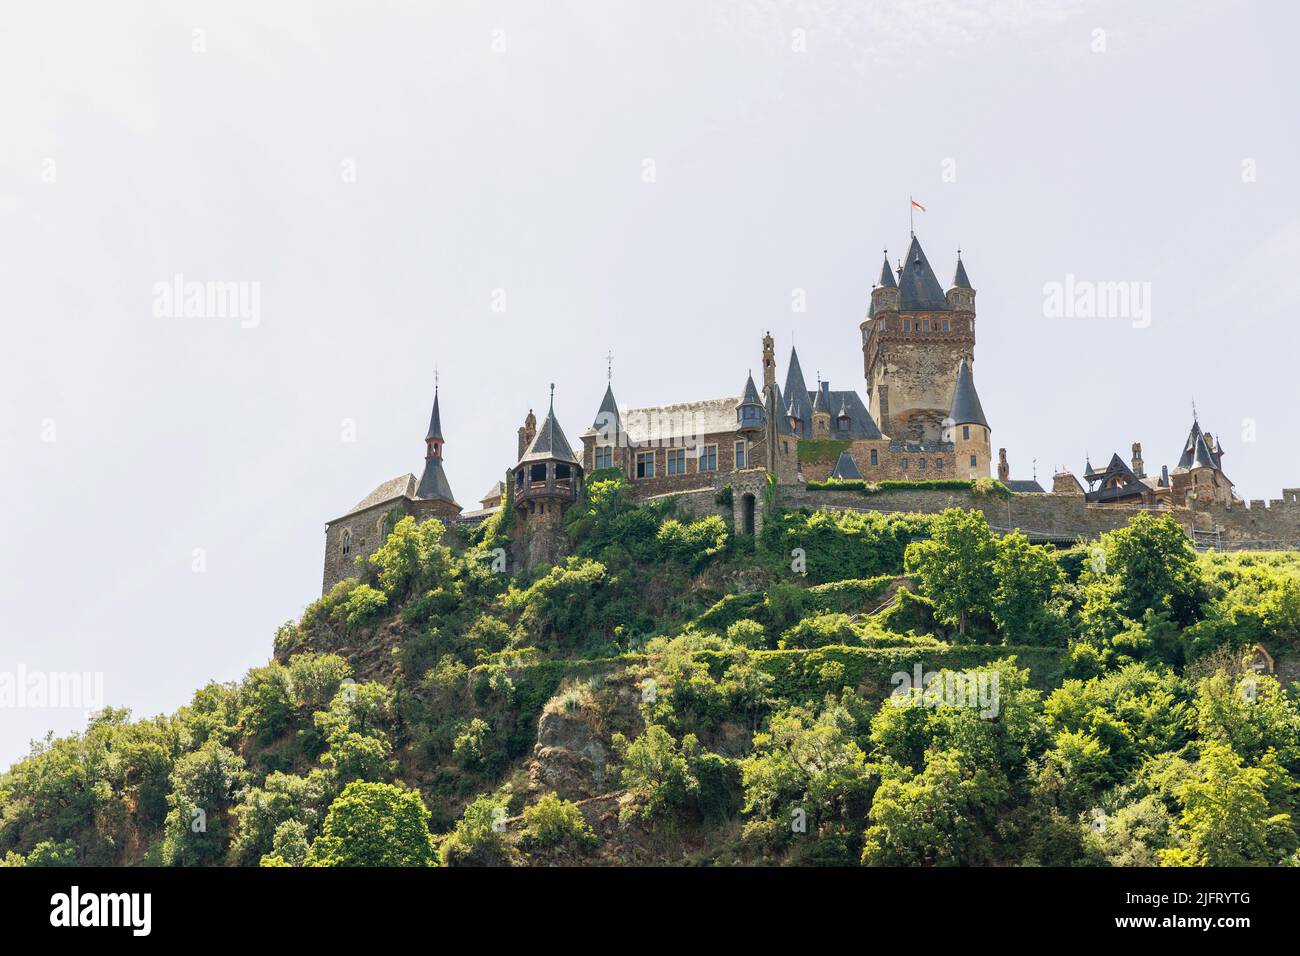 Cochem, une ville allemande sur la rivière Mosel dans le district de Cochem-Zell, Rhénanie-Palatinat, Allemagne. La ville a un château et des bâtiments à colombages. Banque D'Images